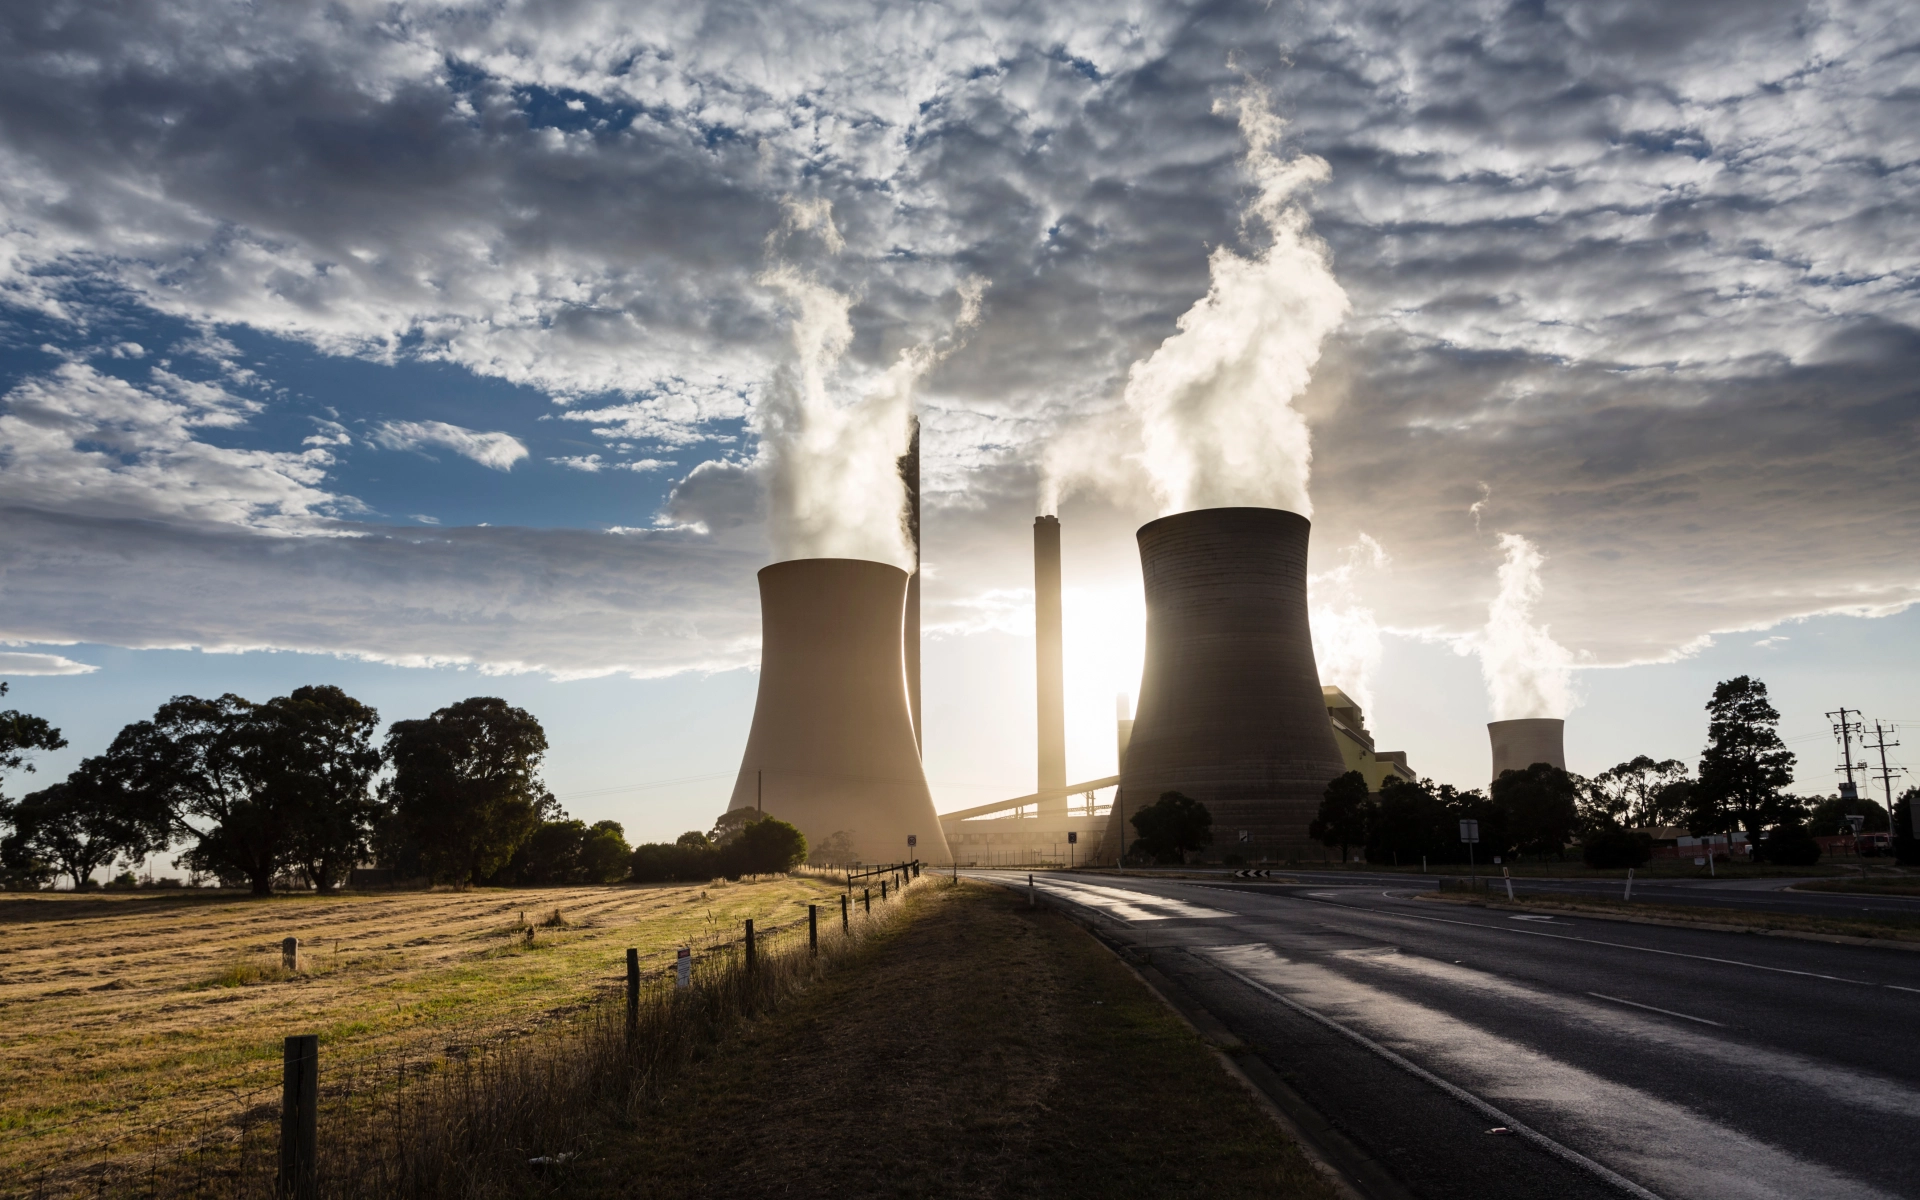 Zwei rauchende Schornsteine von einem Kohlekraftwerk im Sonnenuntergang. Das Bild symbolisiert das nahe Ende von fossilen Energieträgern und einem Umdenken. 